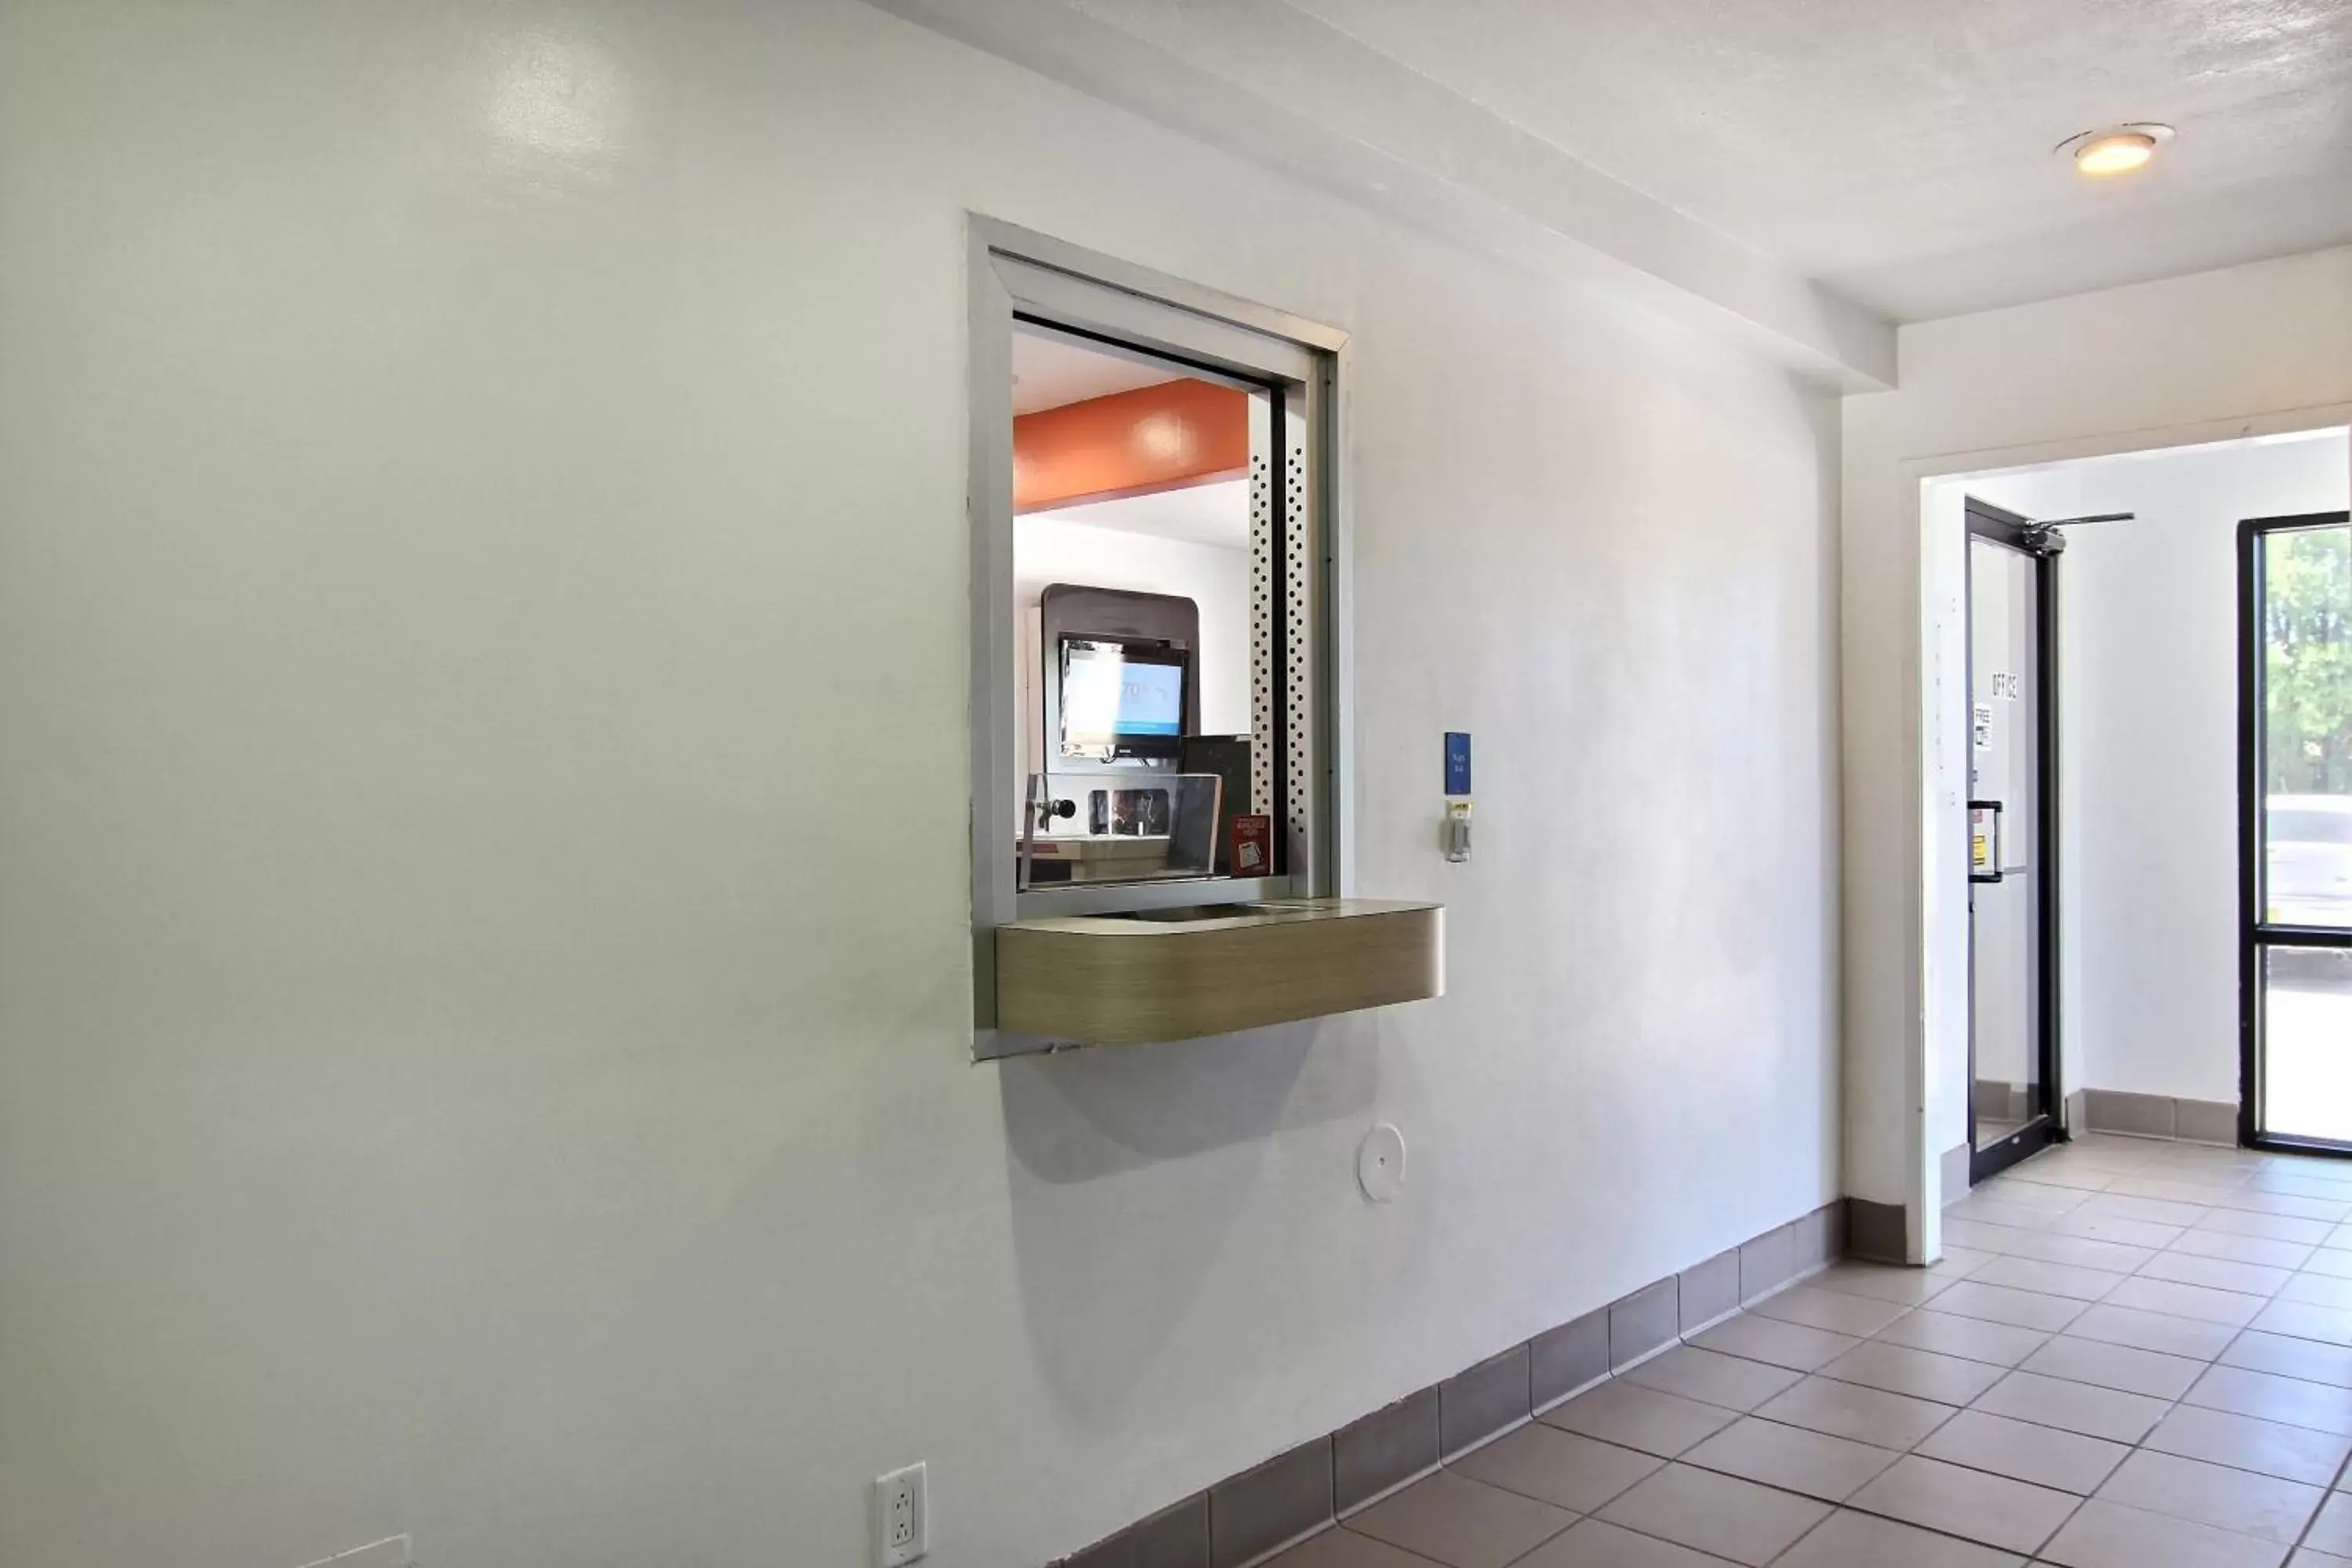 Lobby or reception, Lobby/Reception in Motel 6-Carlsbad, NM